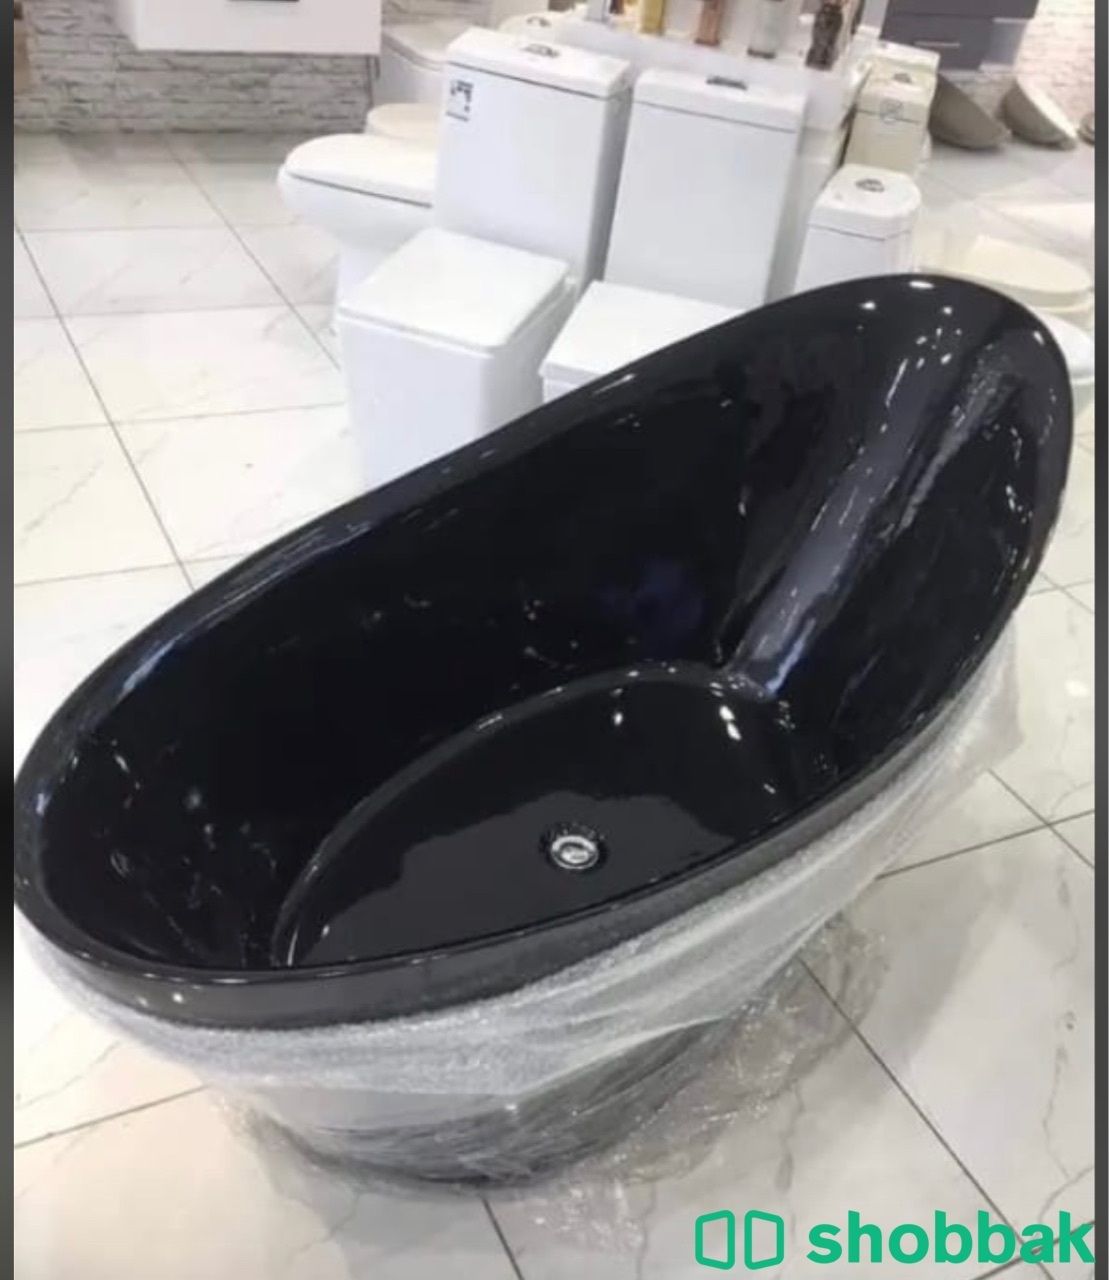 بانيو bathtube Shobbak Saudi Arabia